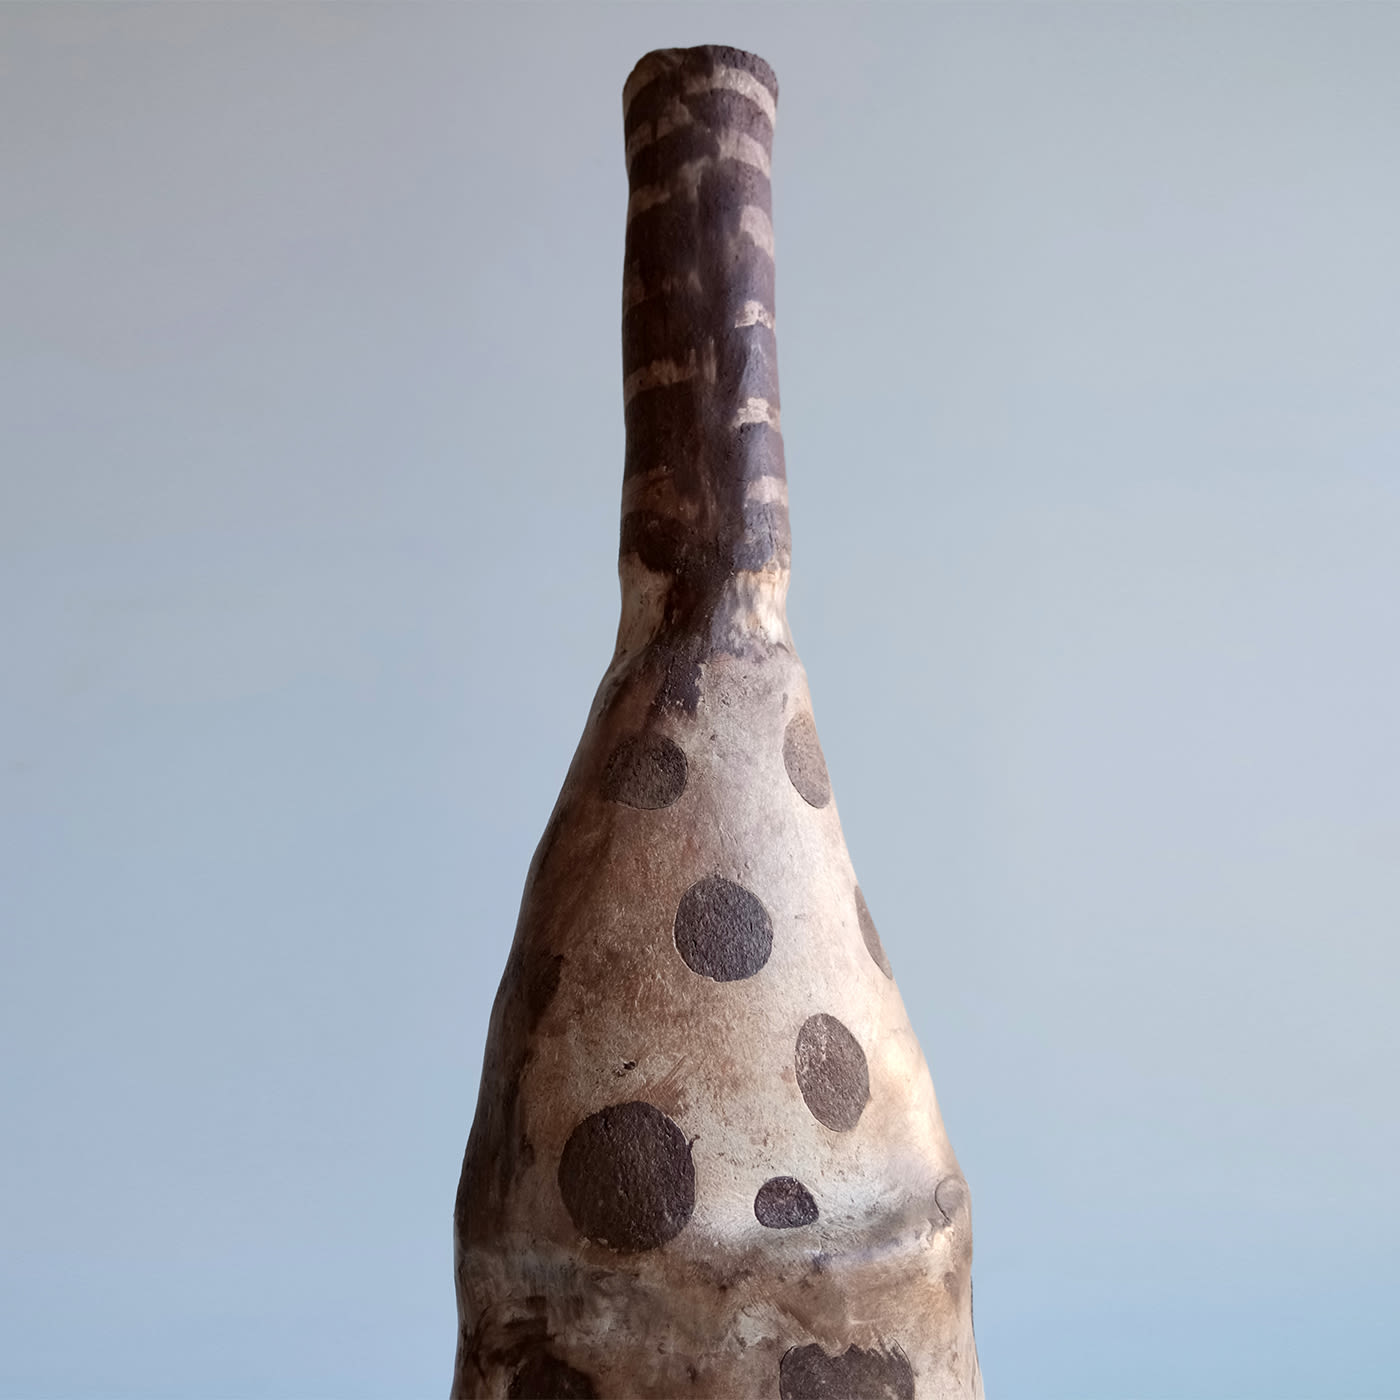 Brown Bottle #7 - Chiara Berta